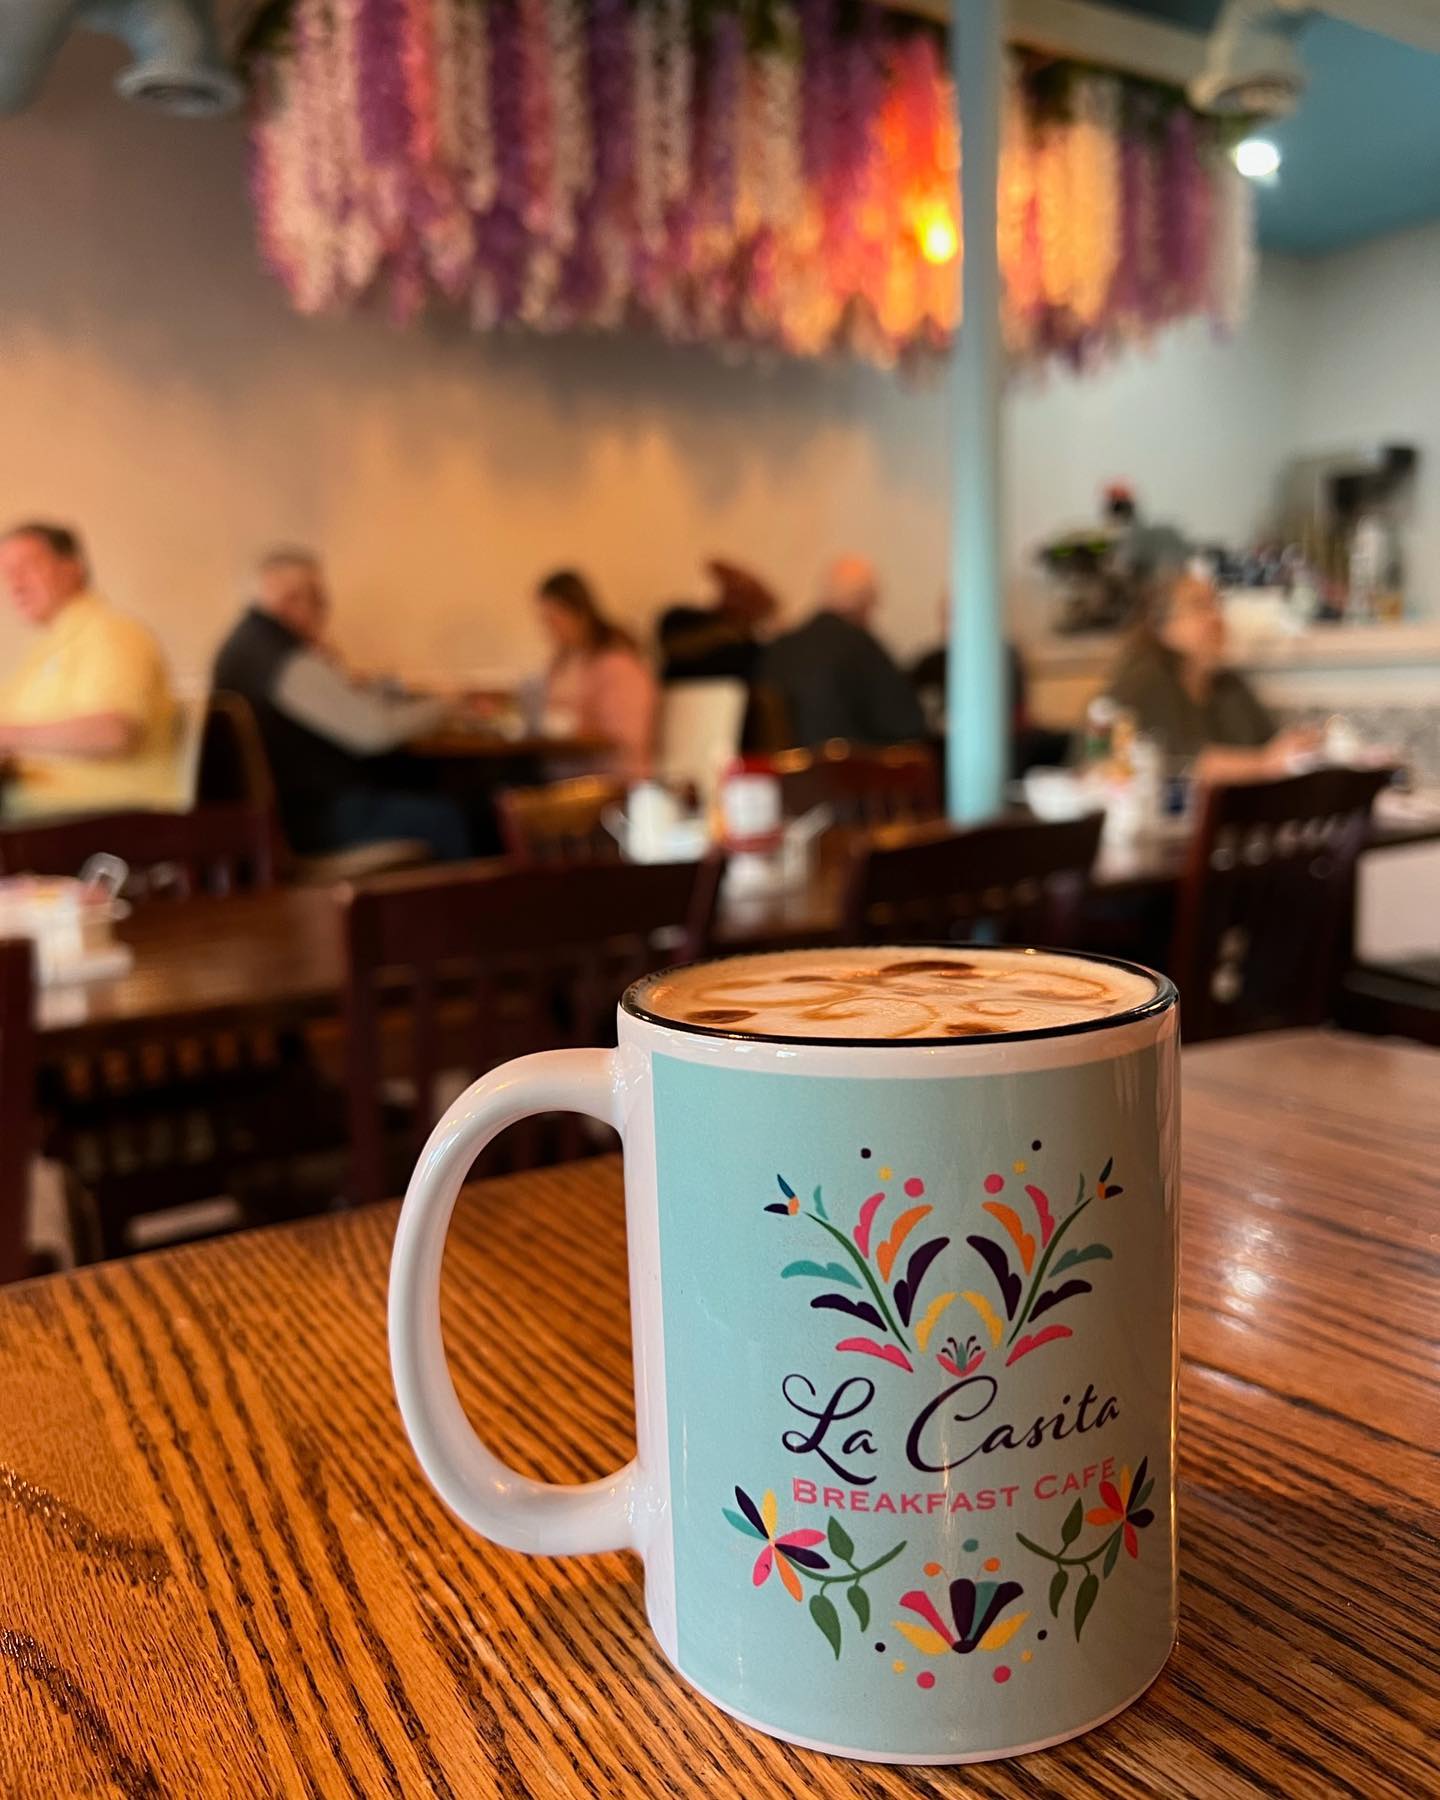 Good morning ☀️ Breakfast at La Casita Breakfast Cafe in Cedar Rapids is making Monday fabulous 🥰